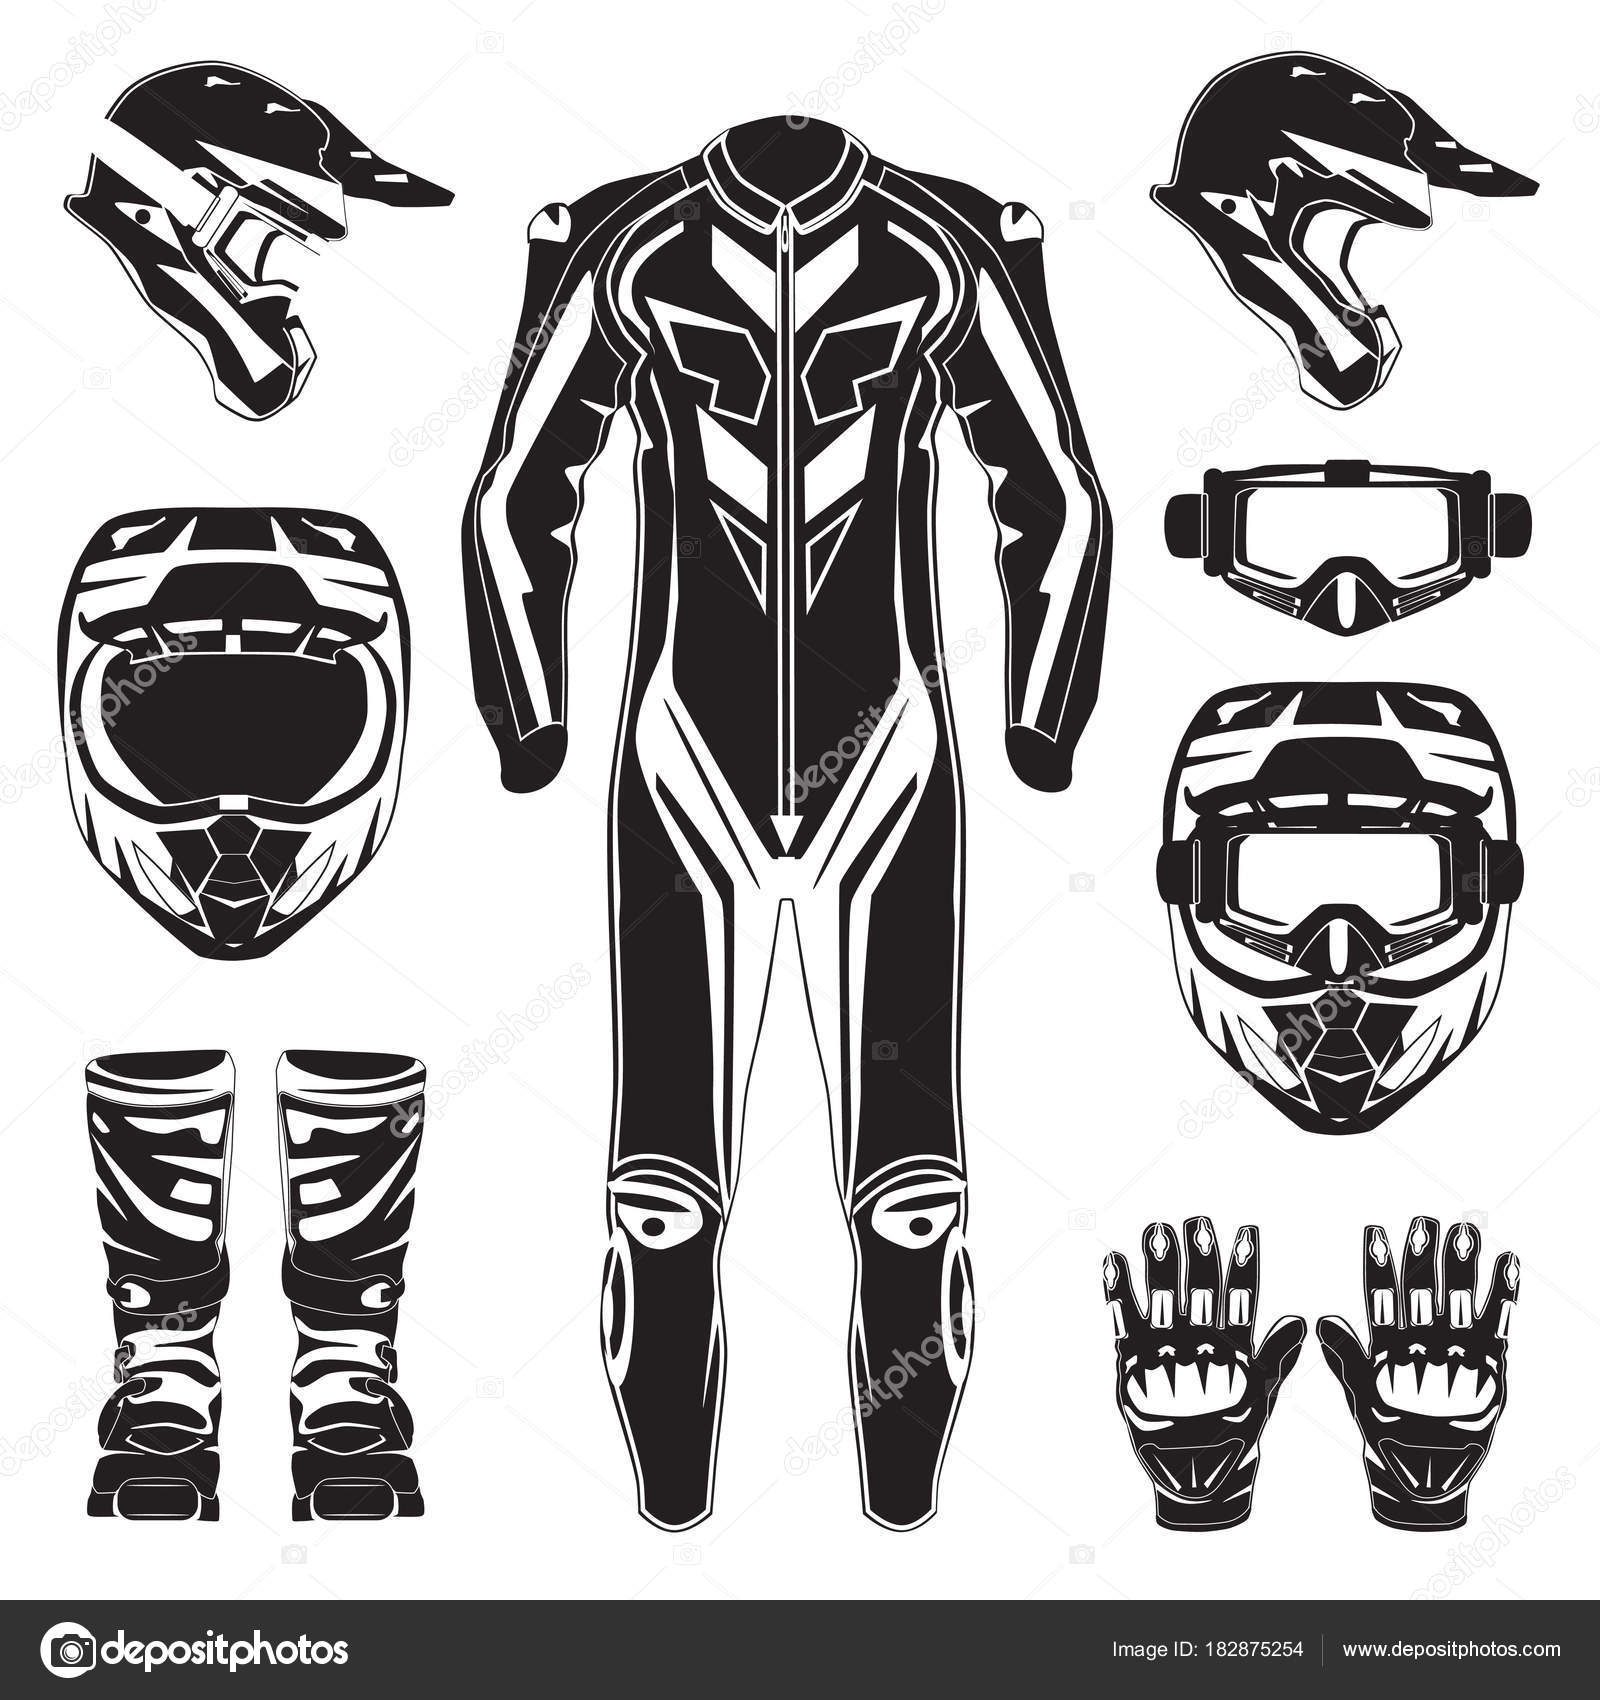 Premium Vector  Vector set of motorcycle accessories. sport bike, helmet,  gloves, boots, jacket.